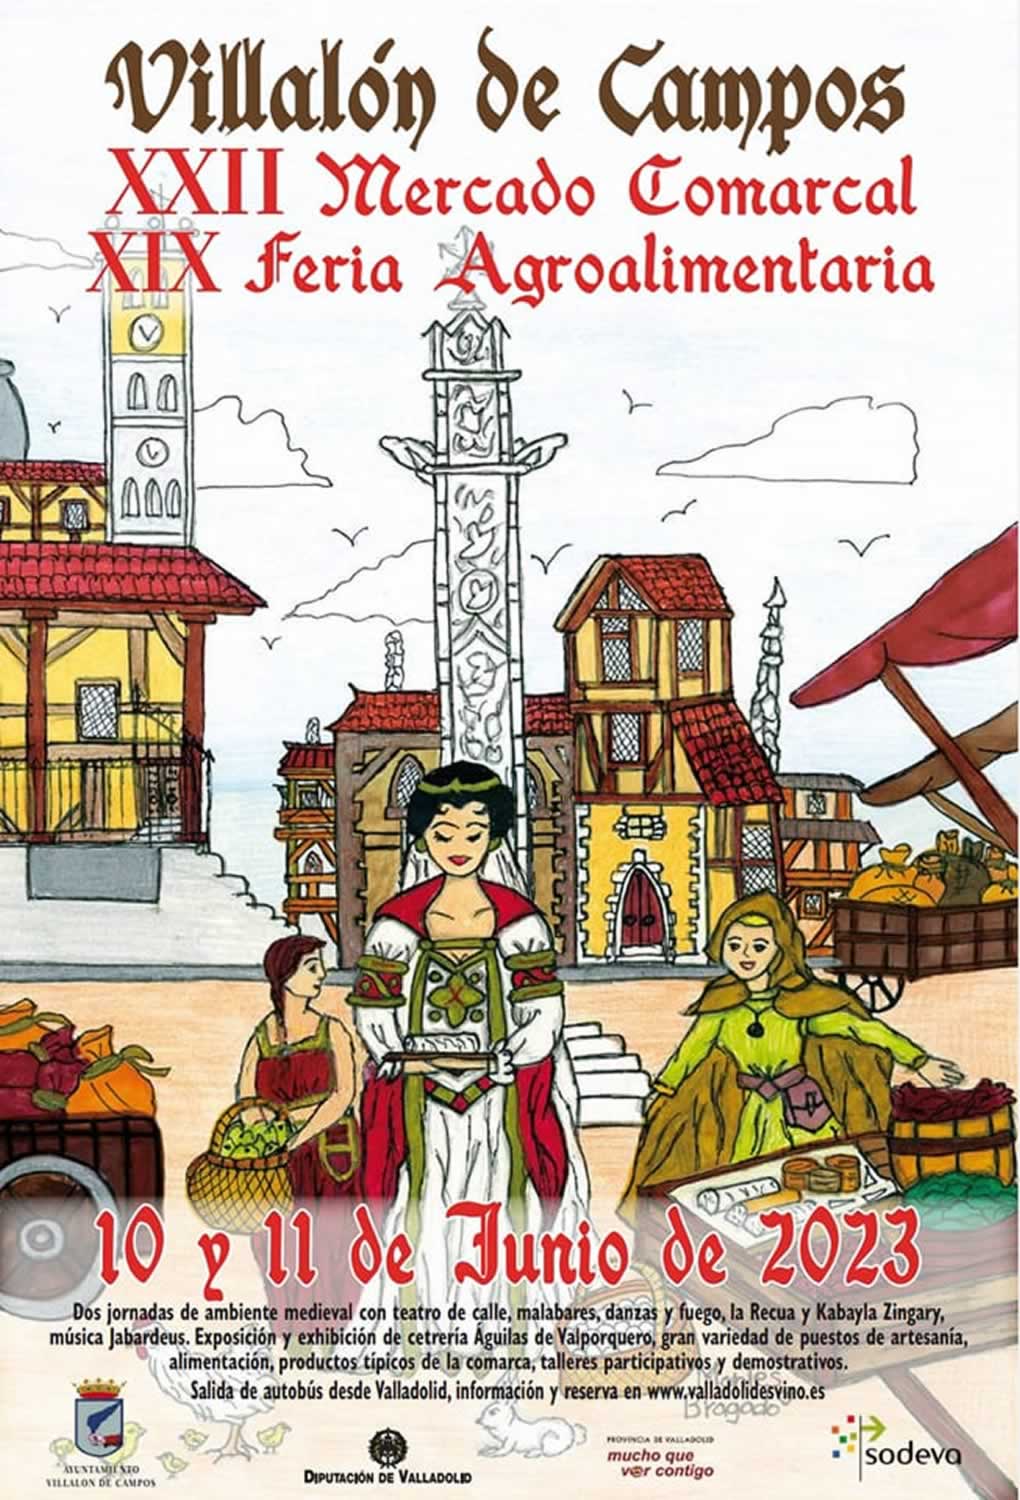 XXII Mercado comarcal – XIX feria agroalimentaria en Villalon de Campos 2023